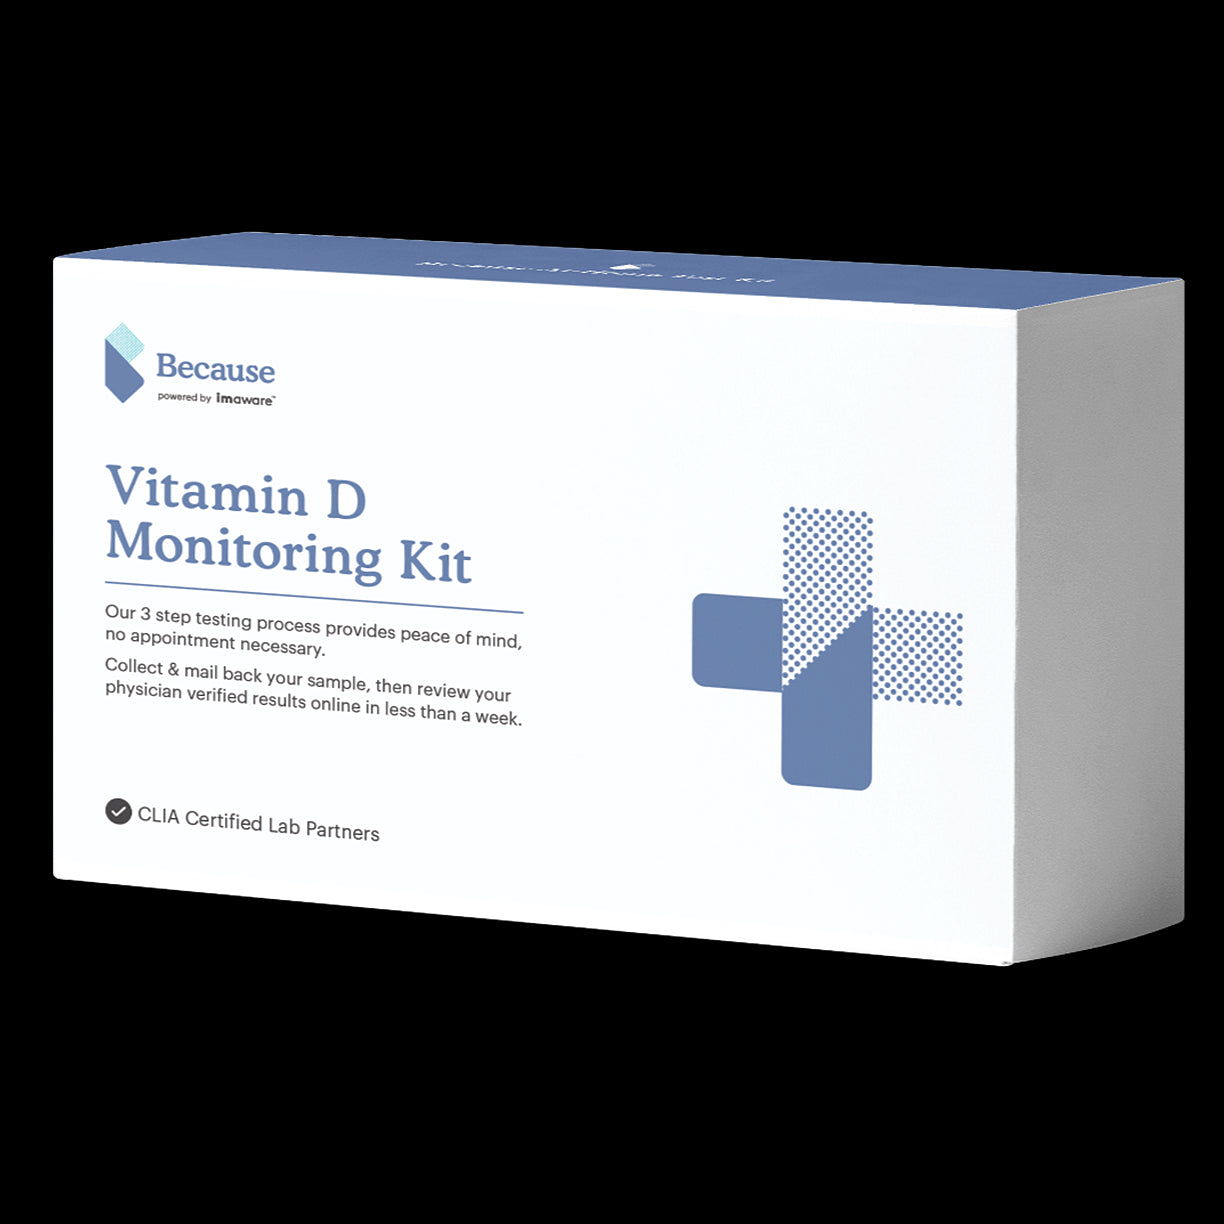 Because Vitamin D Monitoring Kit